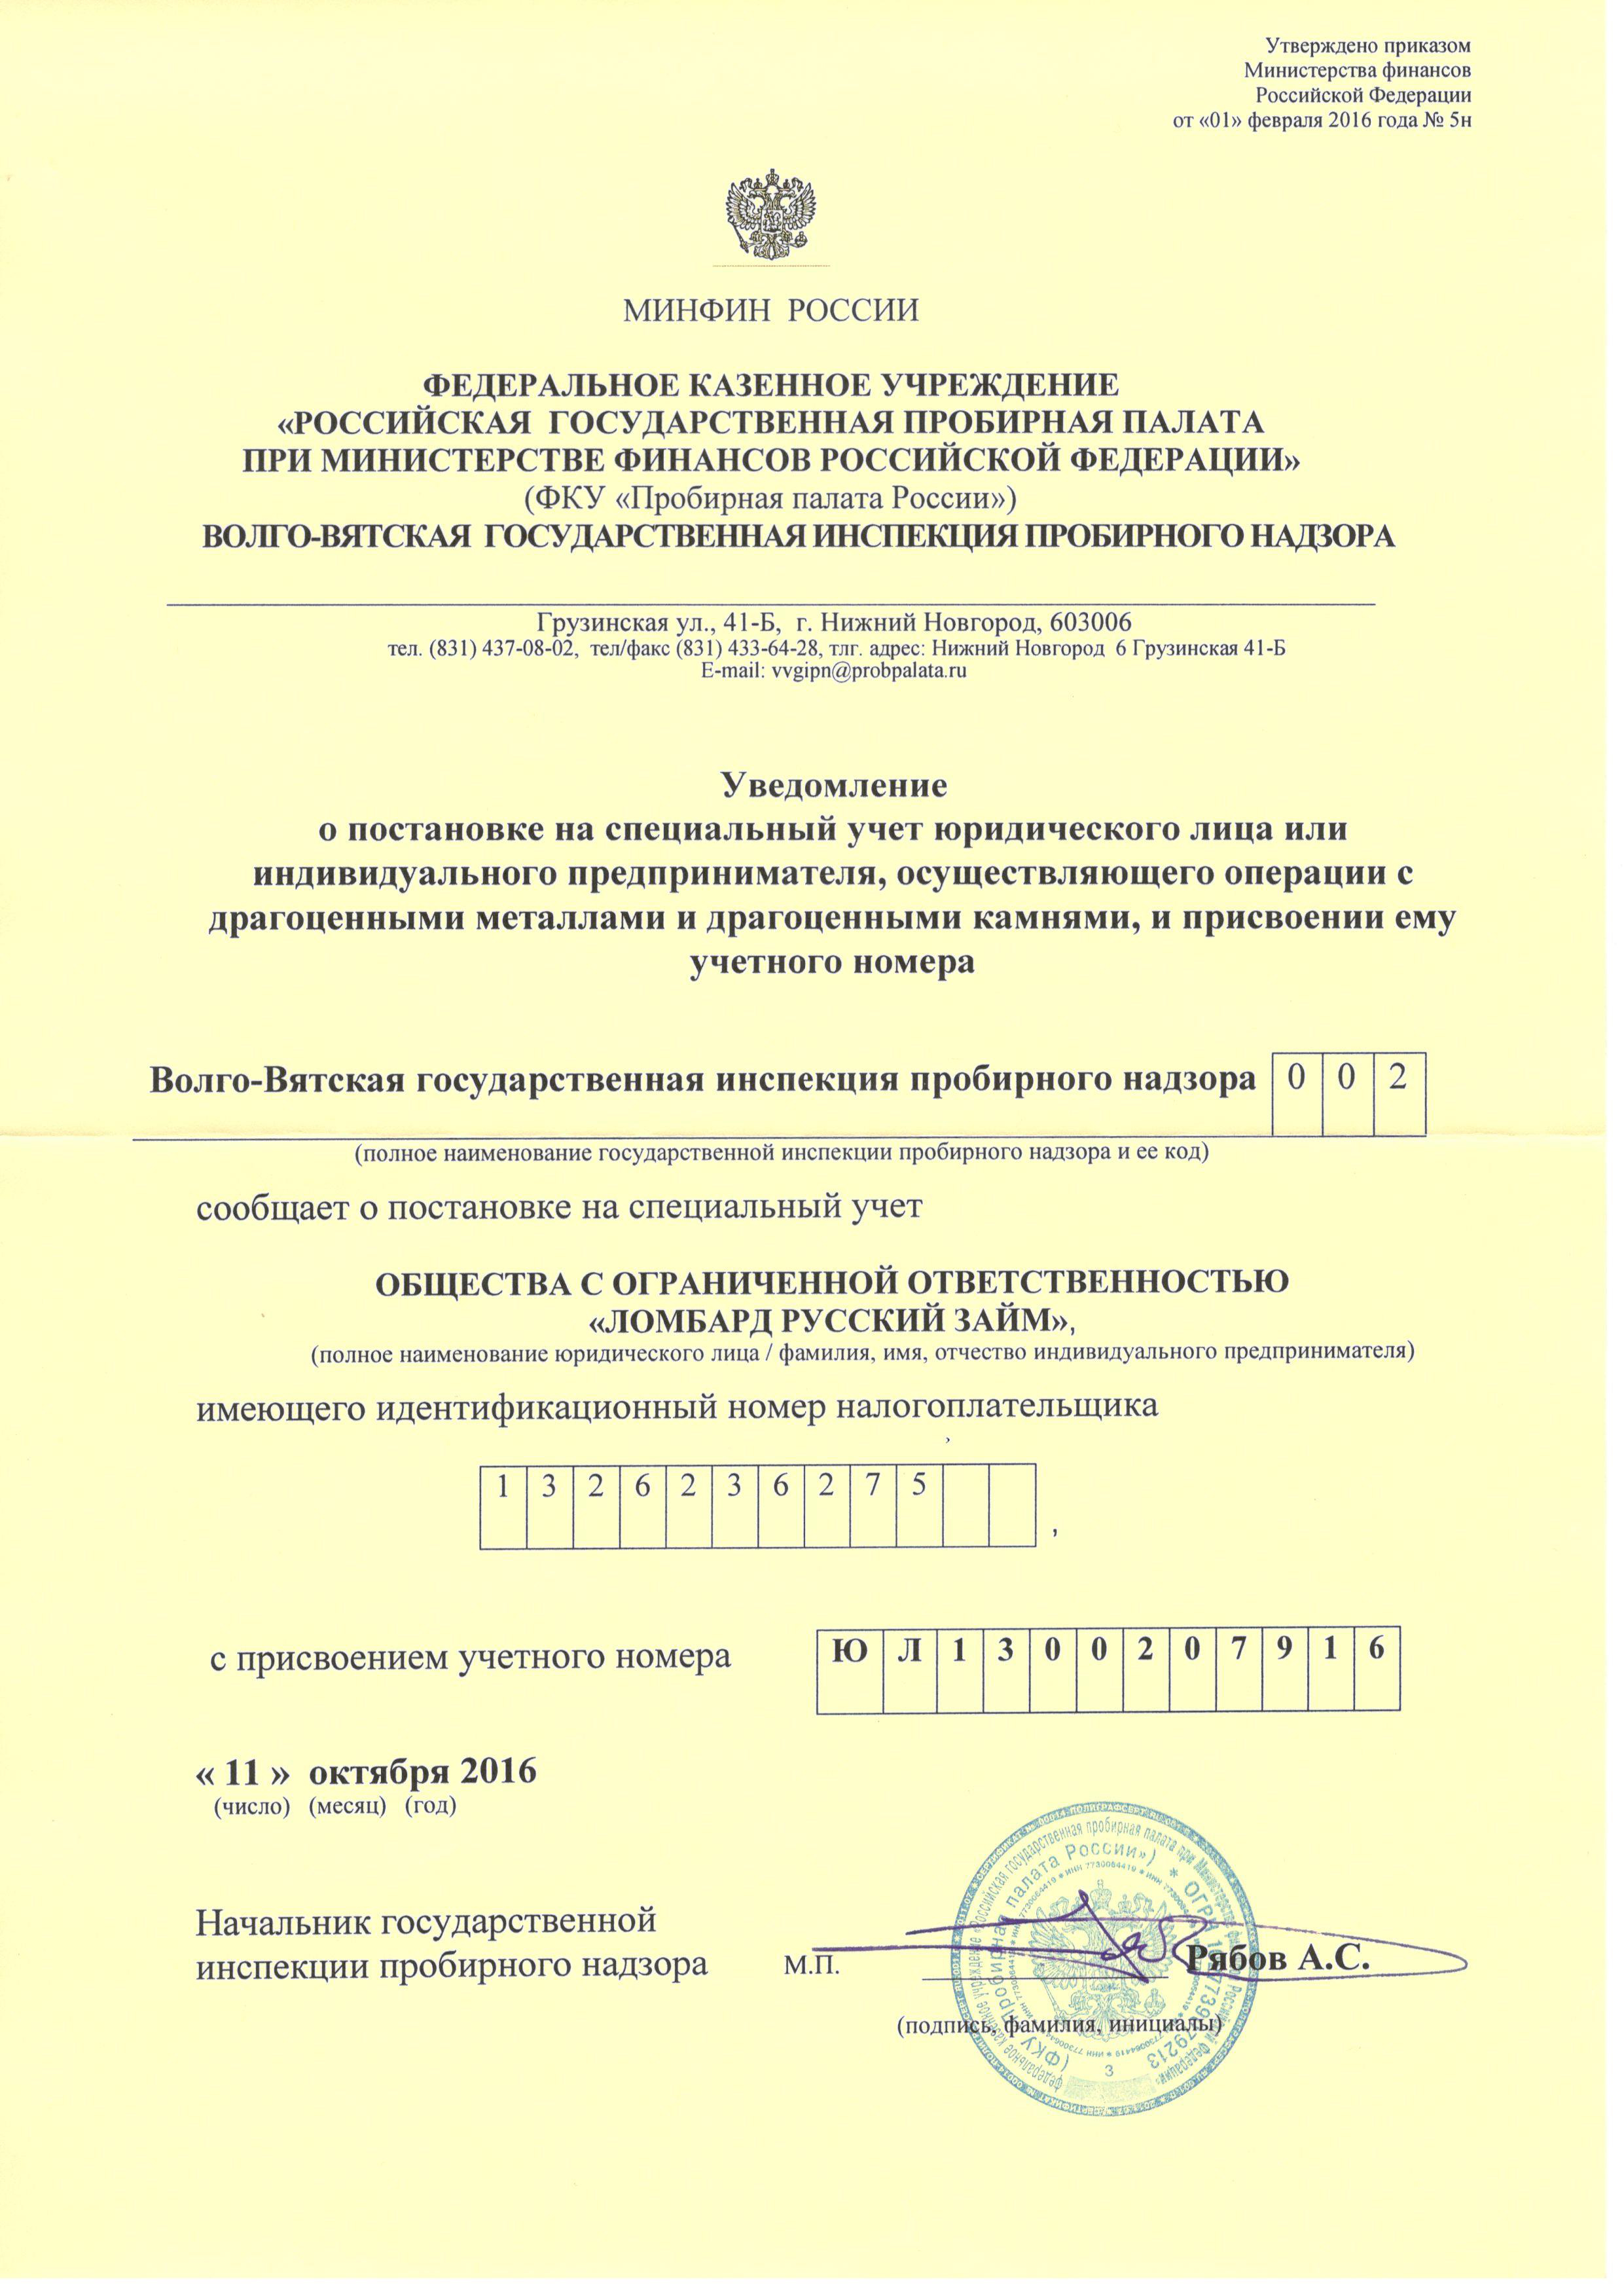 Уведомление о постановке на специальный учет в Пробирной палате РФ